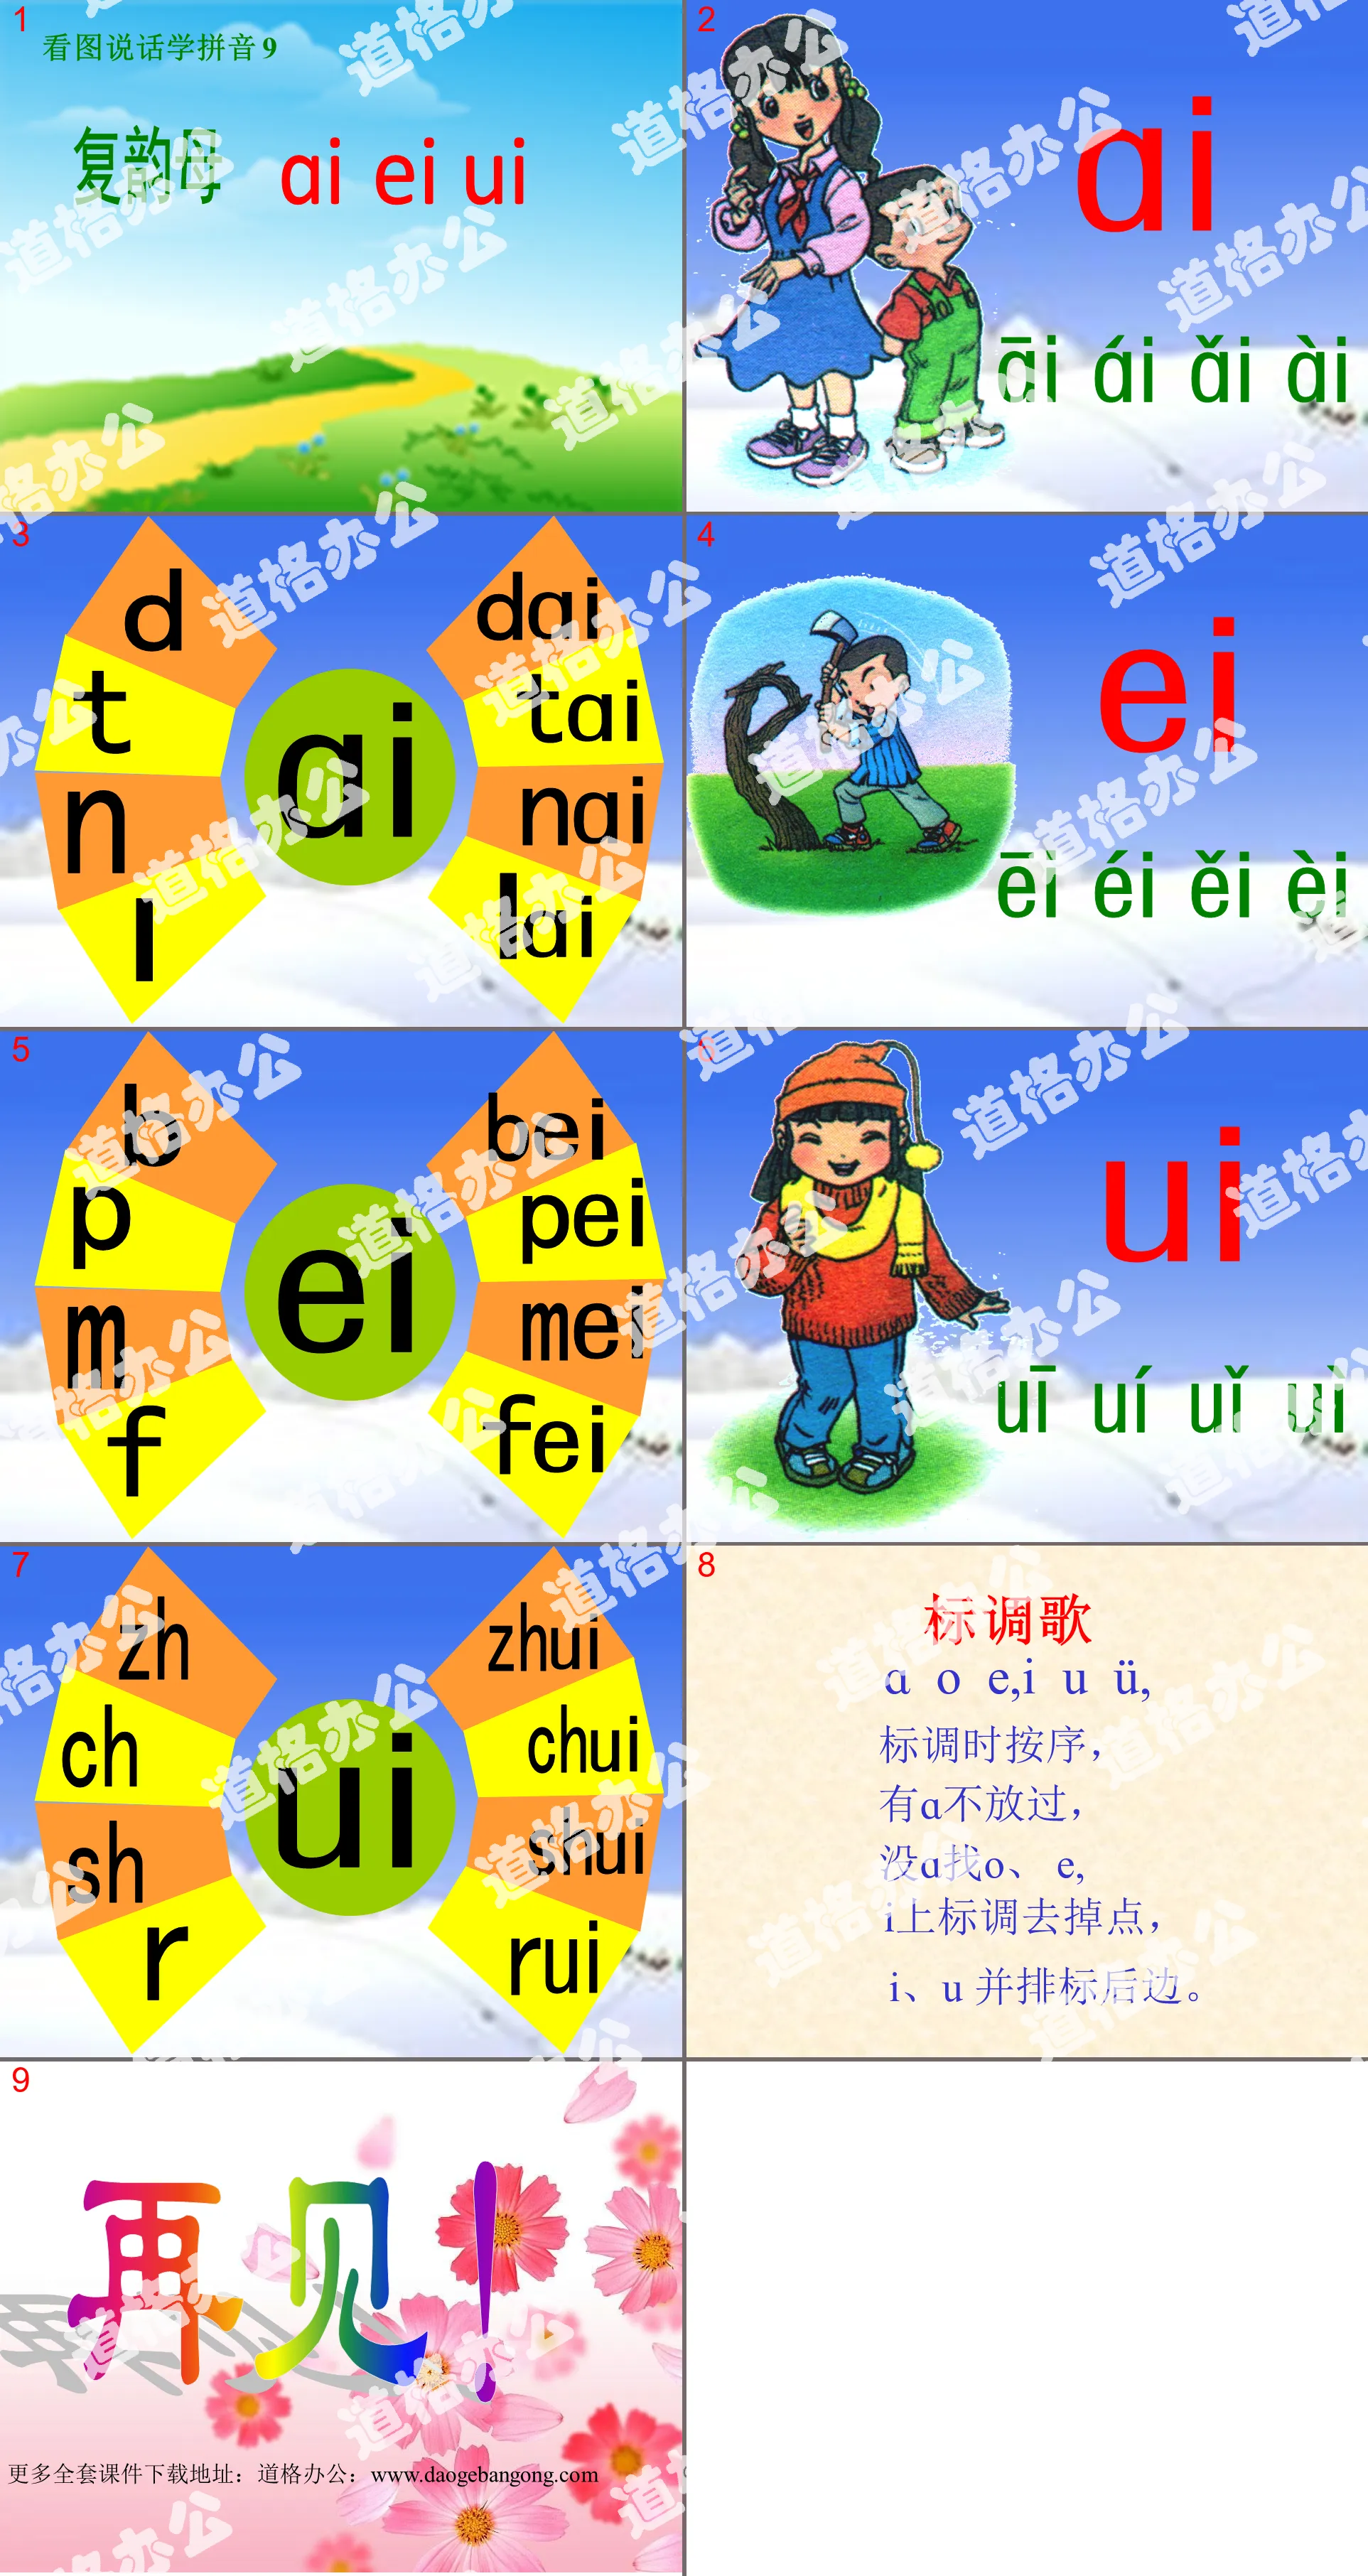 人教版小学语文一年级上册汉语拼音《ai ei ui》PPT课件下载；
